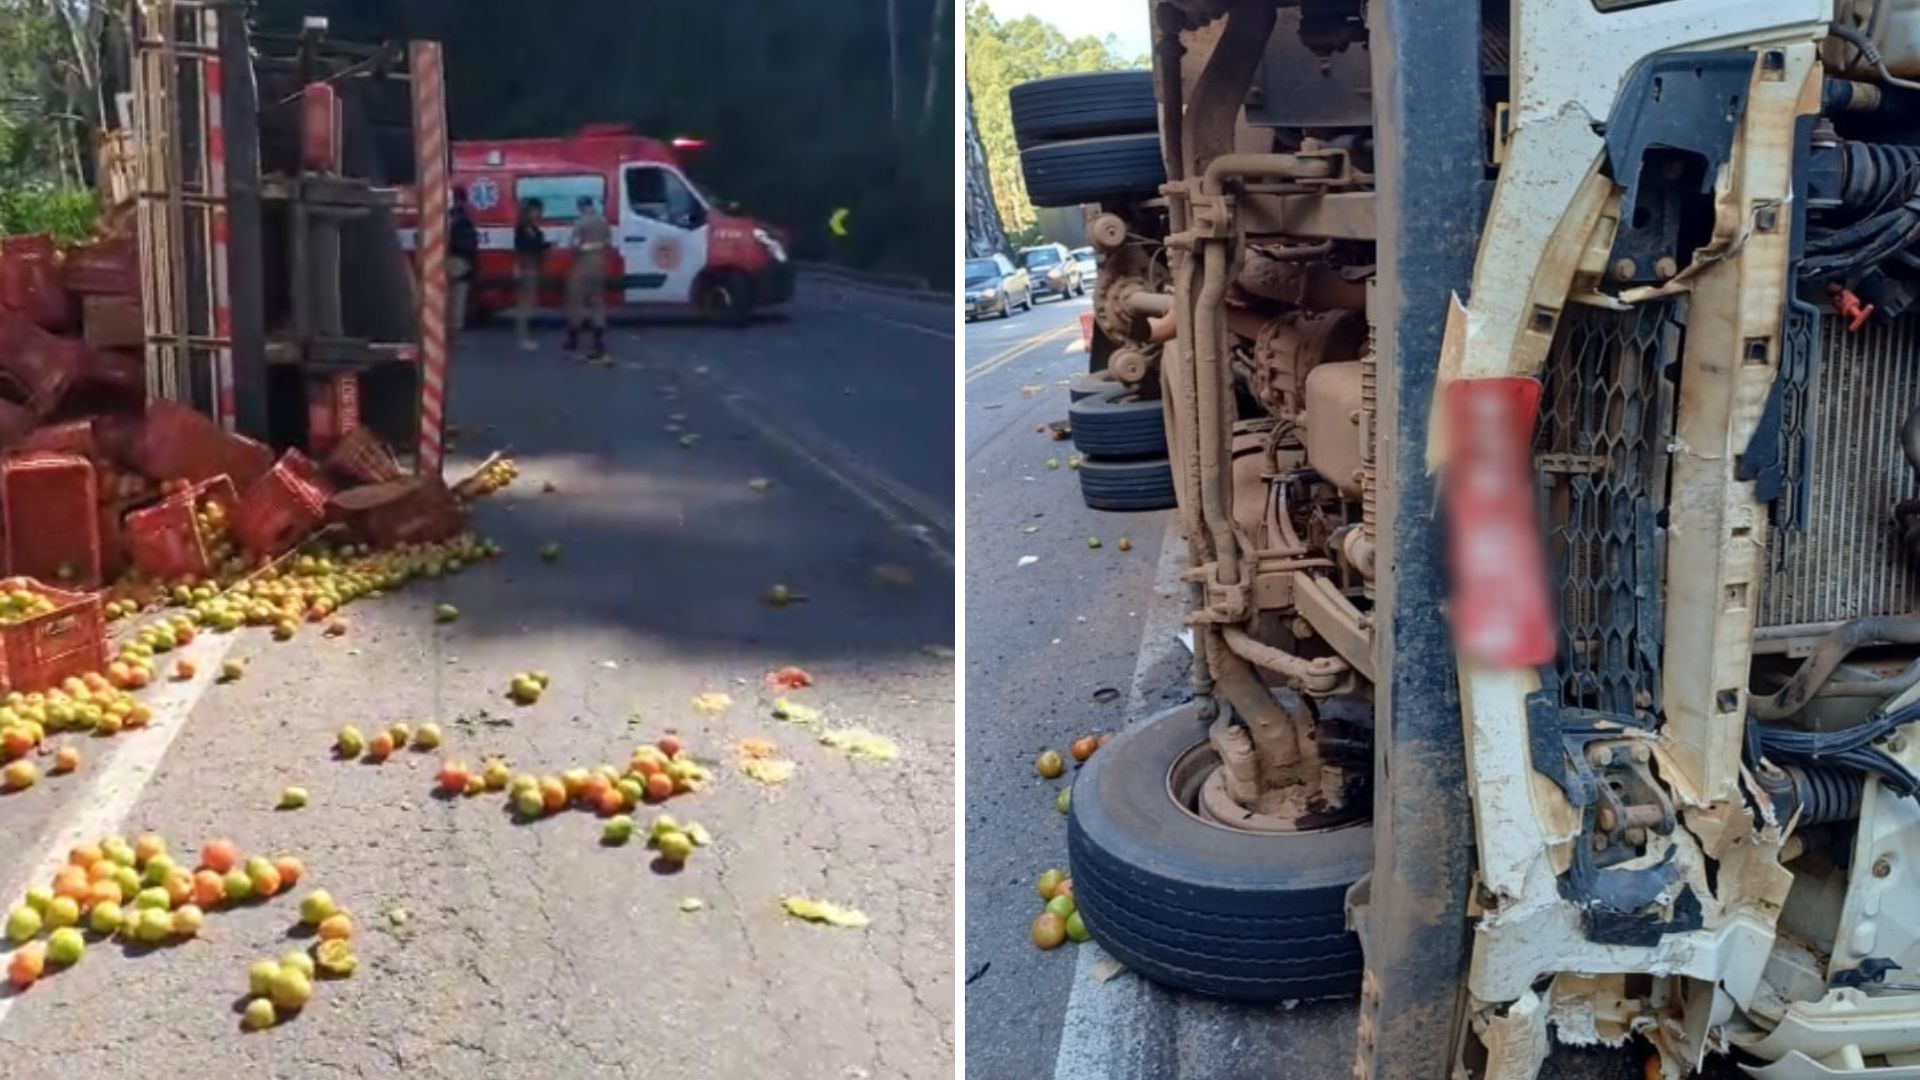 Vítima seguia no sentido contrário ao do caminhão, mas acabou atingida e arrastada pelo veículo que carregava tomates